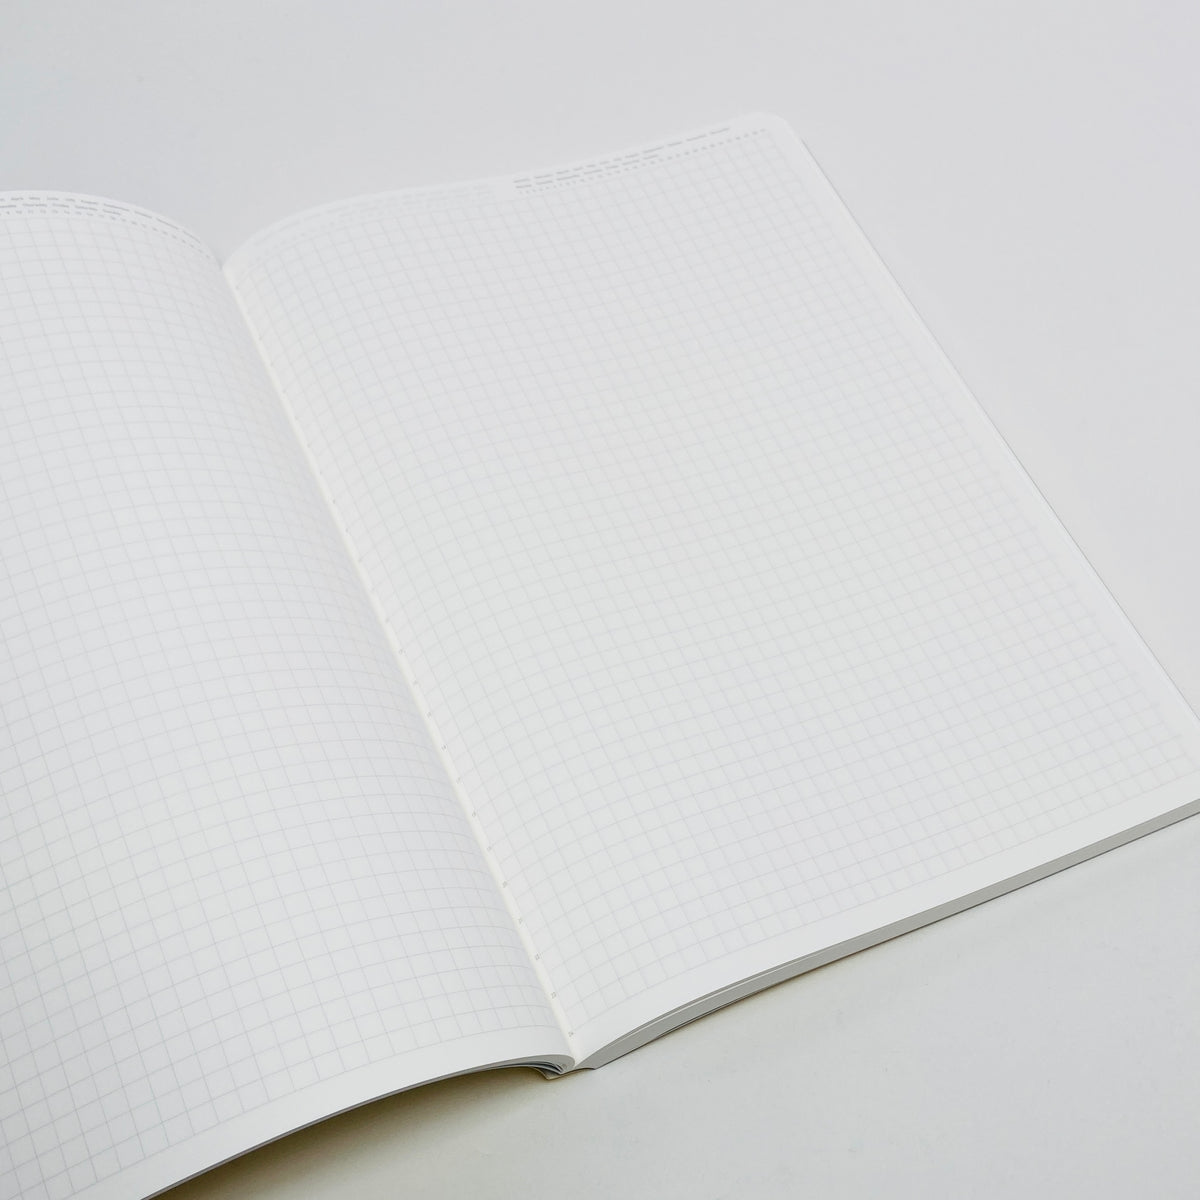 Kleid Tiny Grid B6 Notebook - Brown